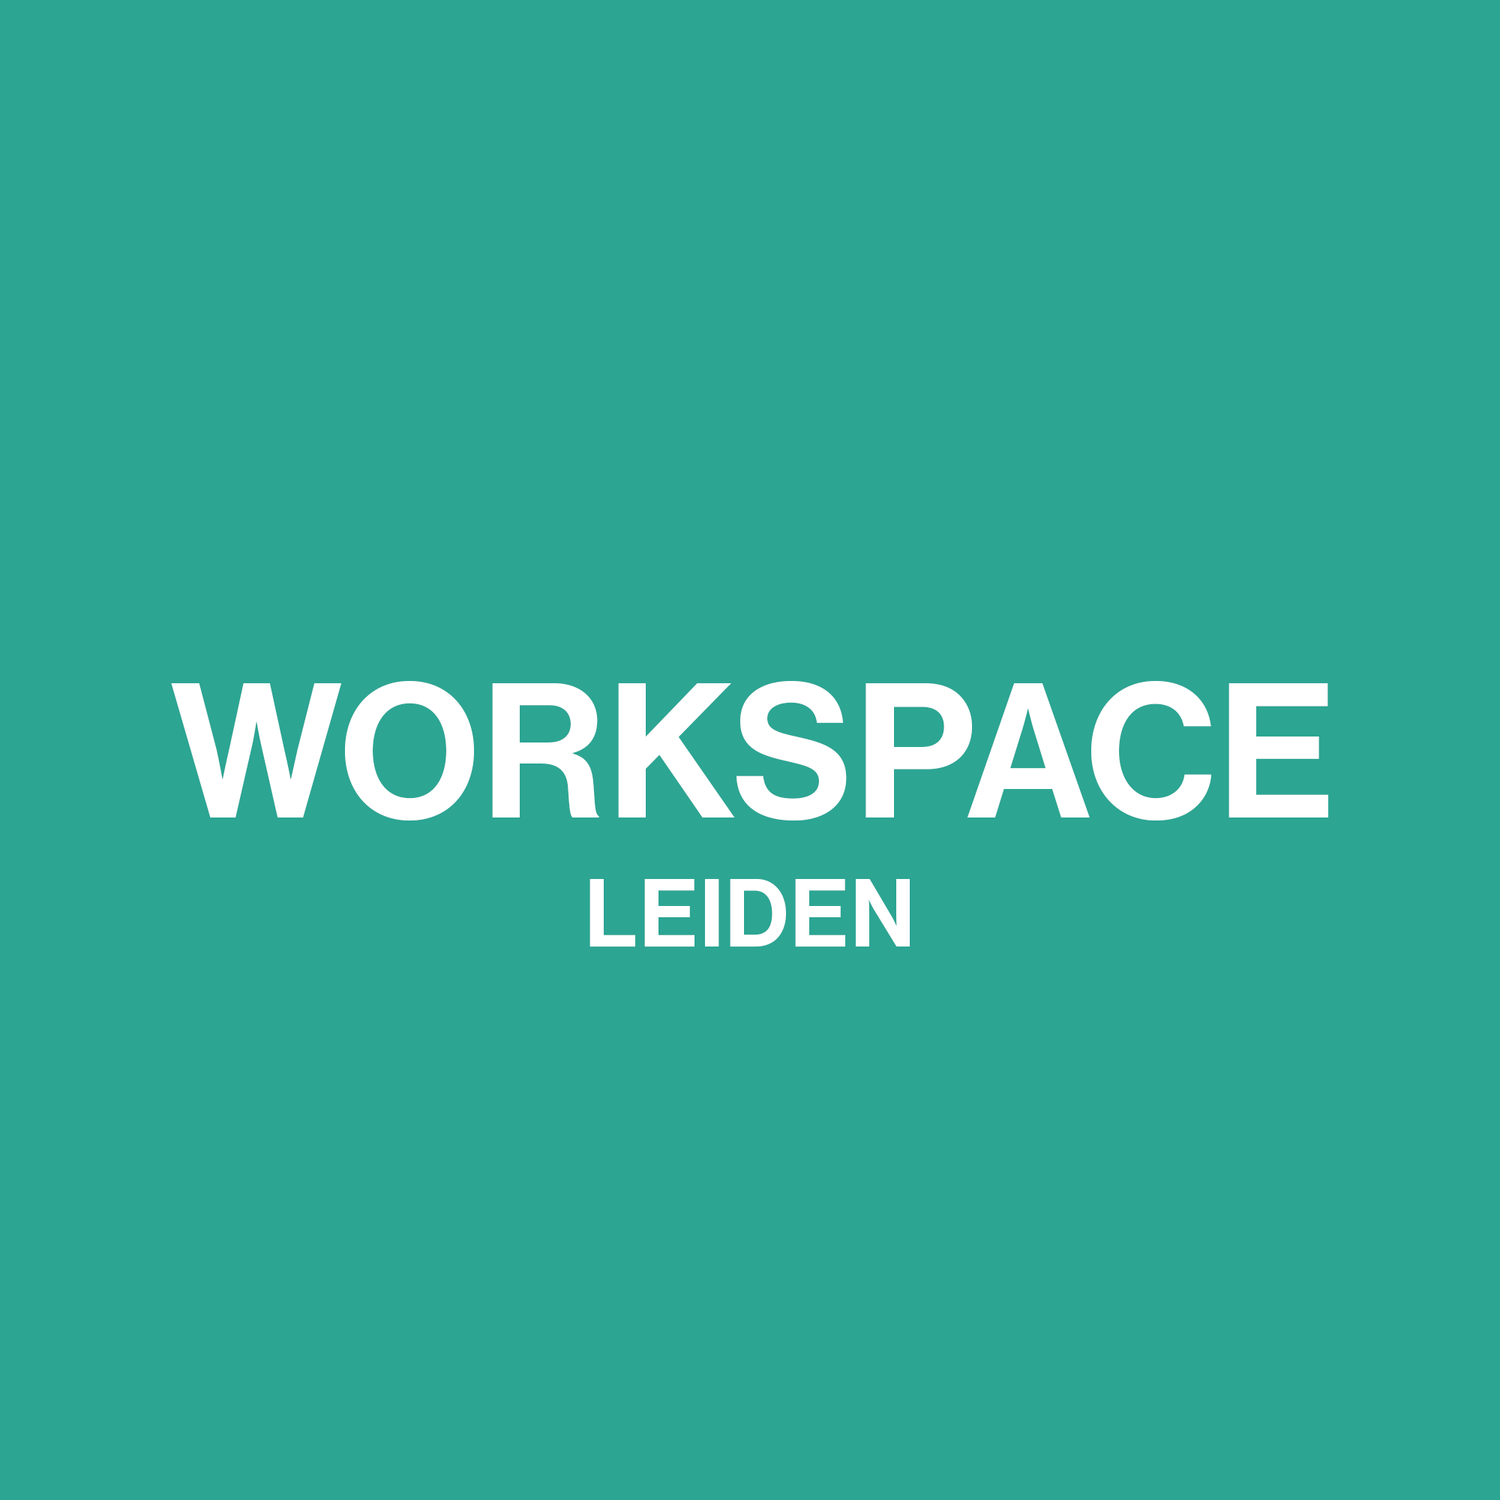 Workspace Leiden